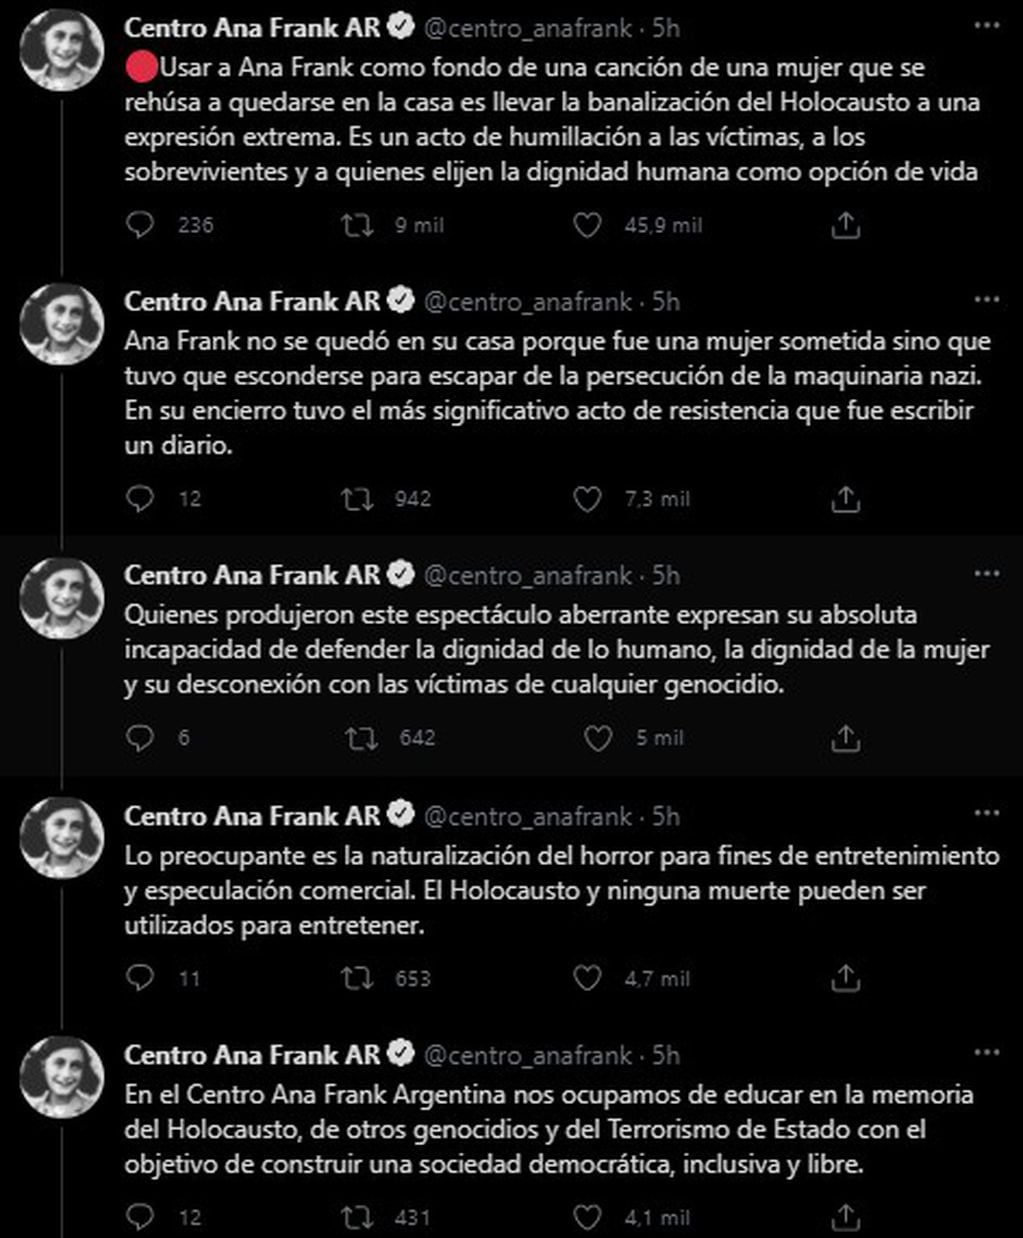 El hilo de mensajes del Centro Ana Frank de Argentina.